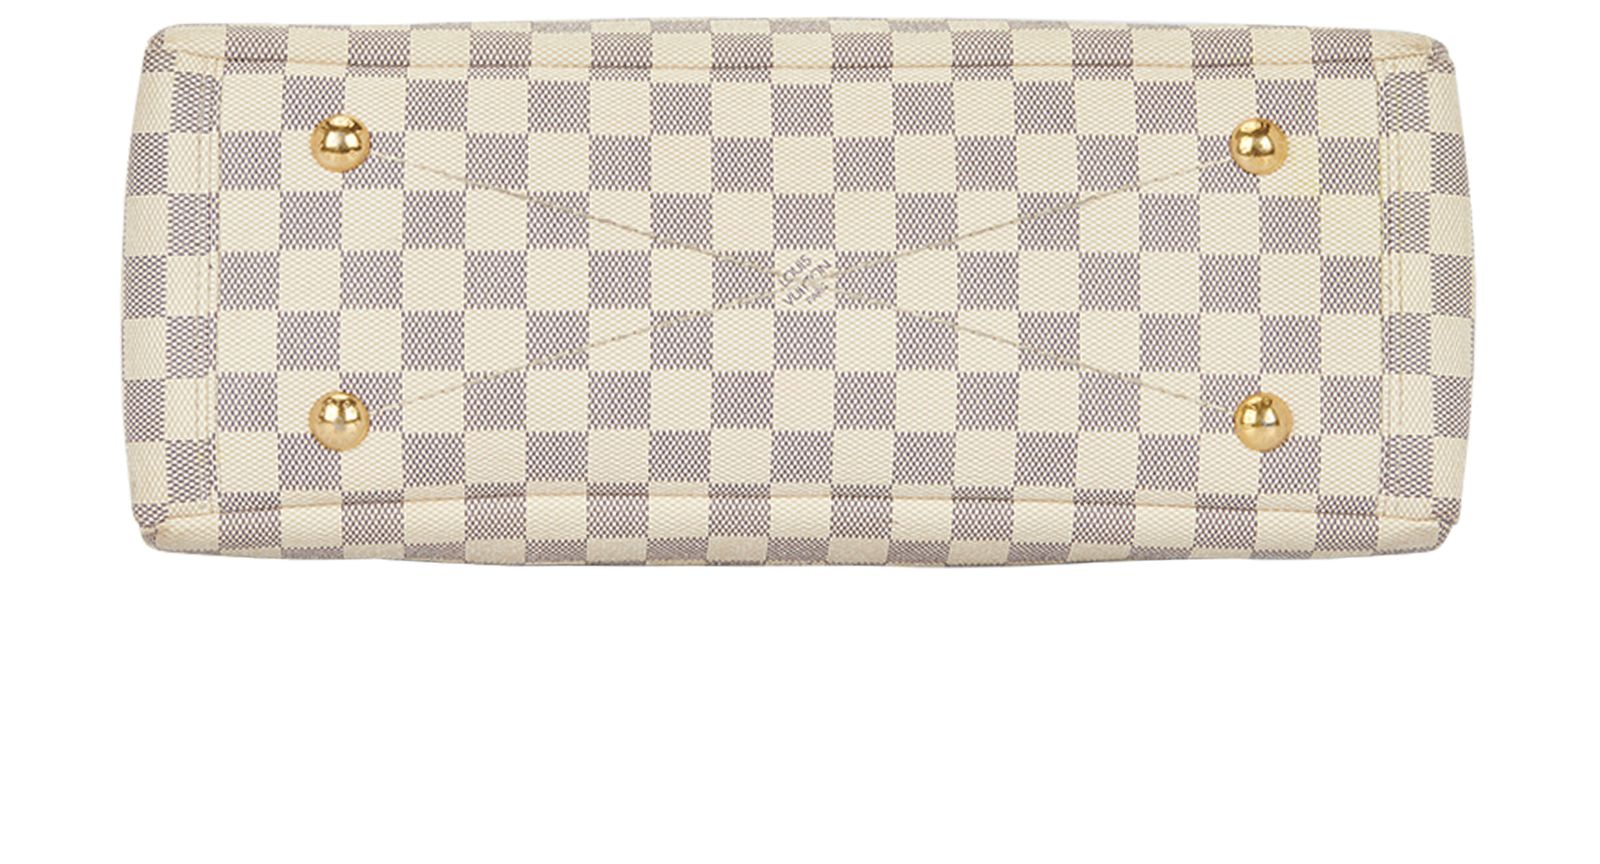 Louis Vuitton Damier Azur Canvas Lymington Bag, myGemma